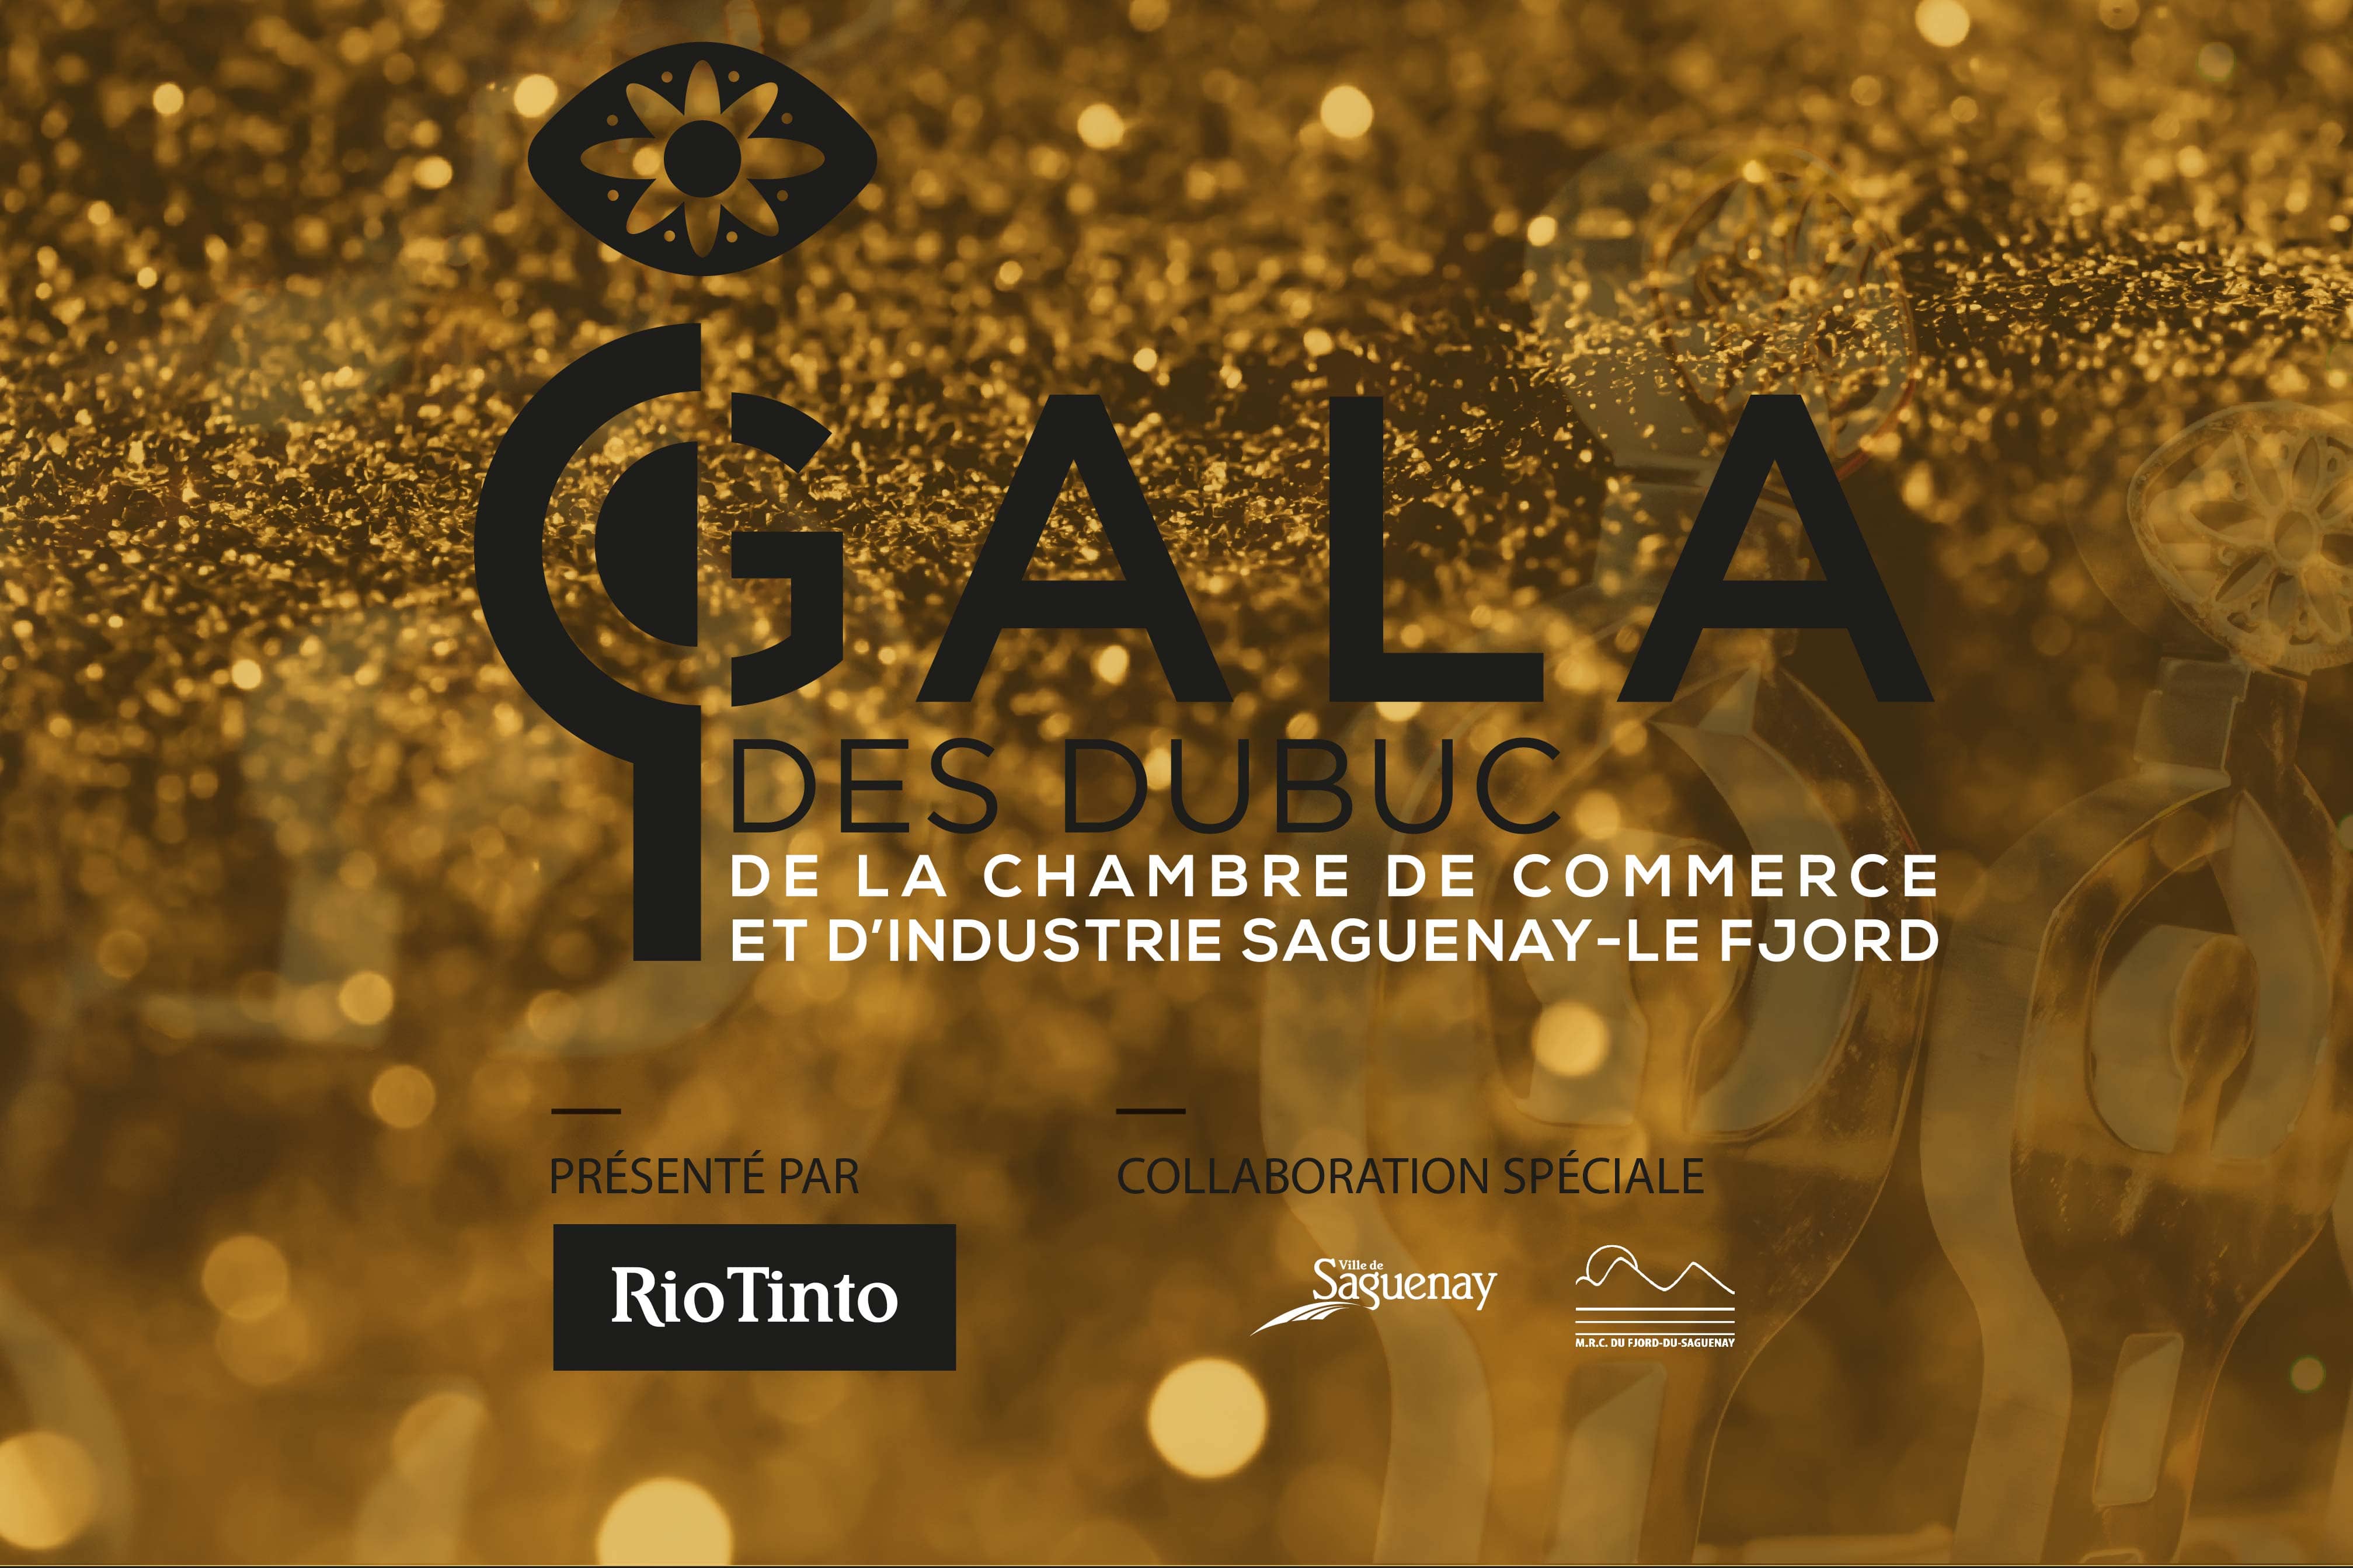 Gala des Dubuc 2020 - Chambre de commerce et d'industrie Saguenay-Le Fjord